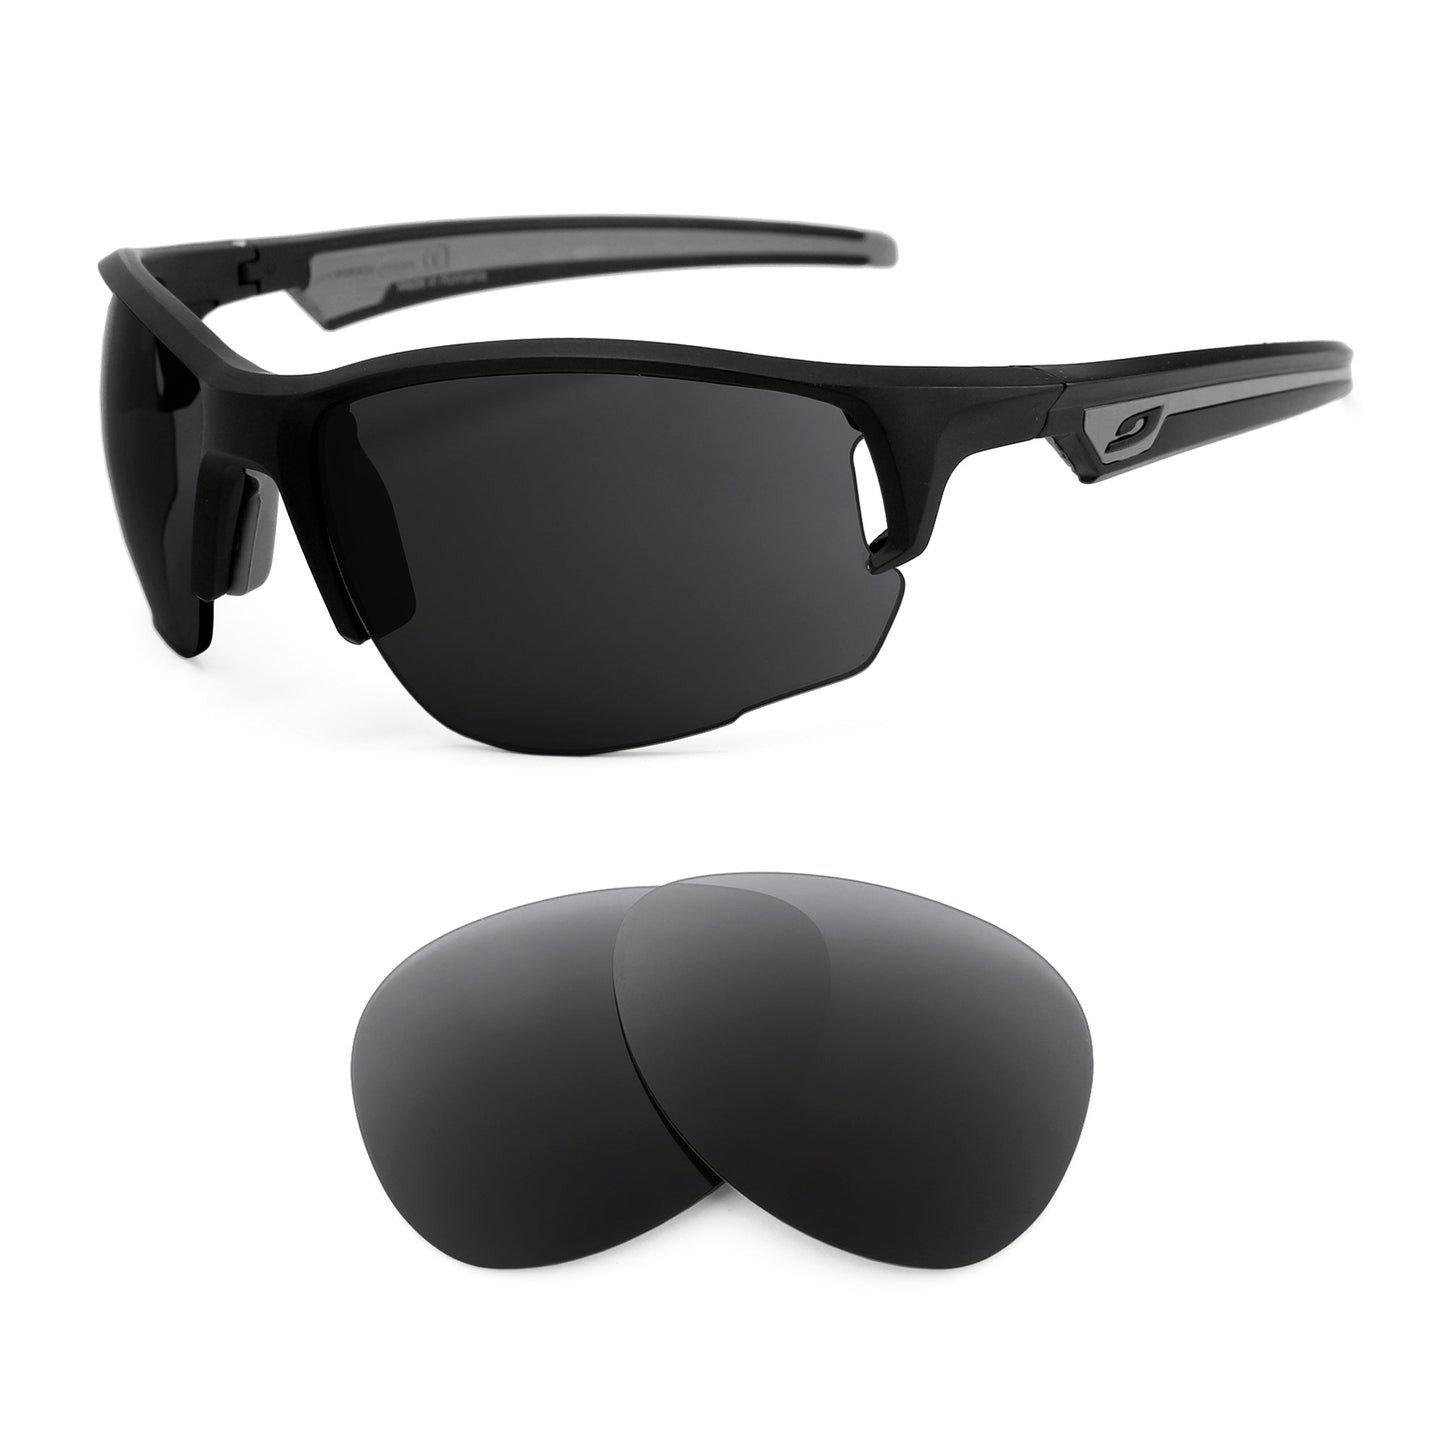 Julbo Venturi sunglasses with replacement lenses